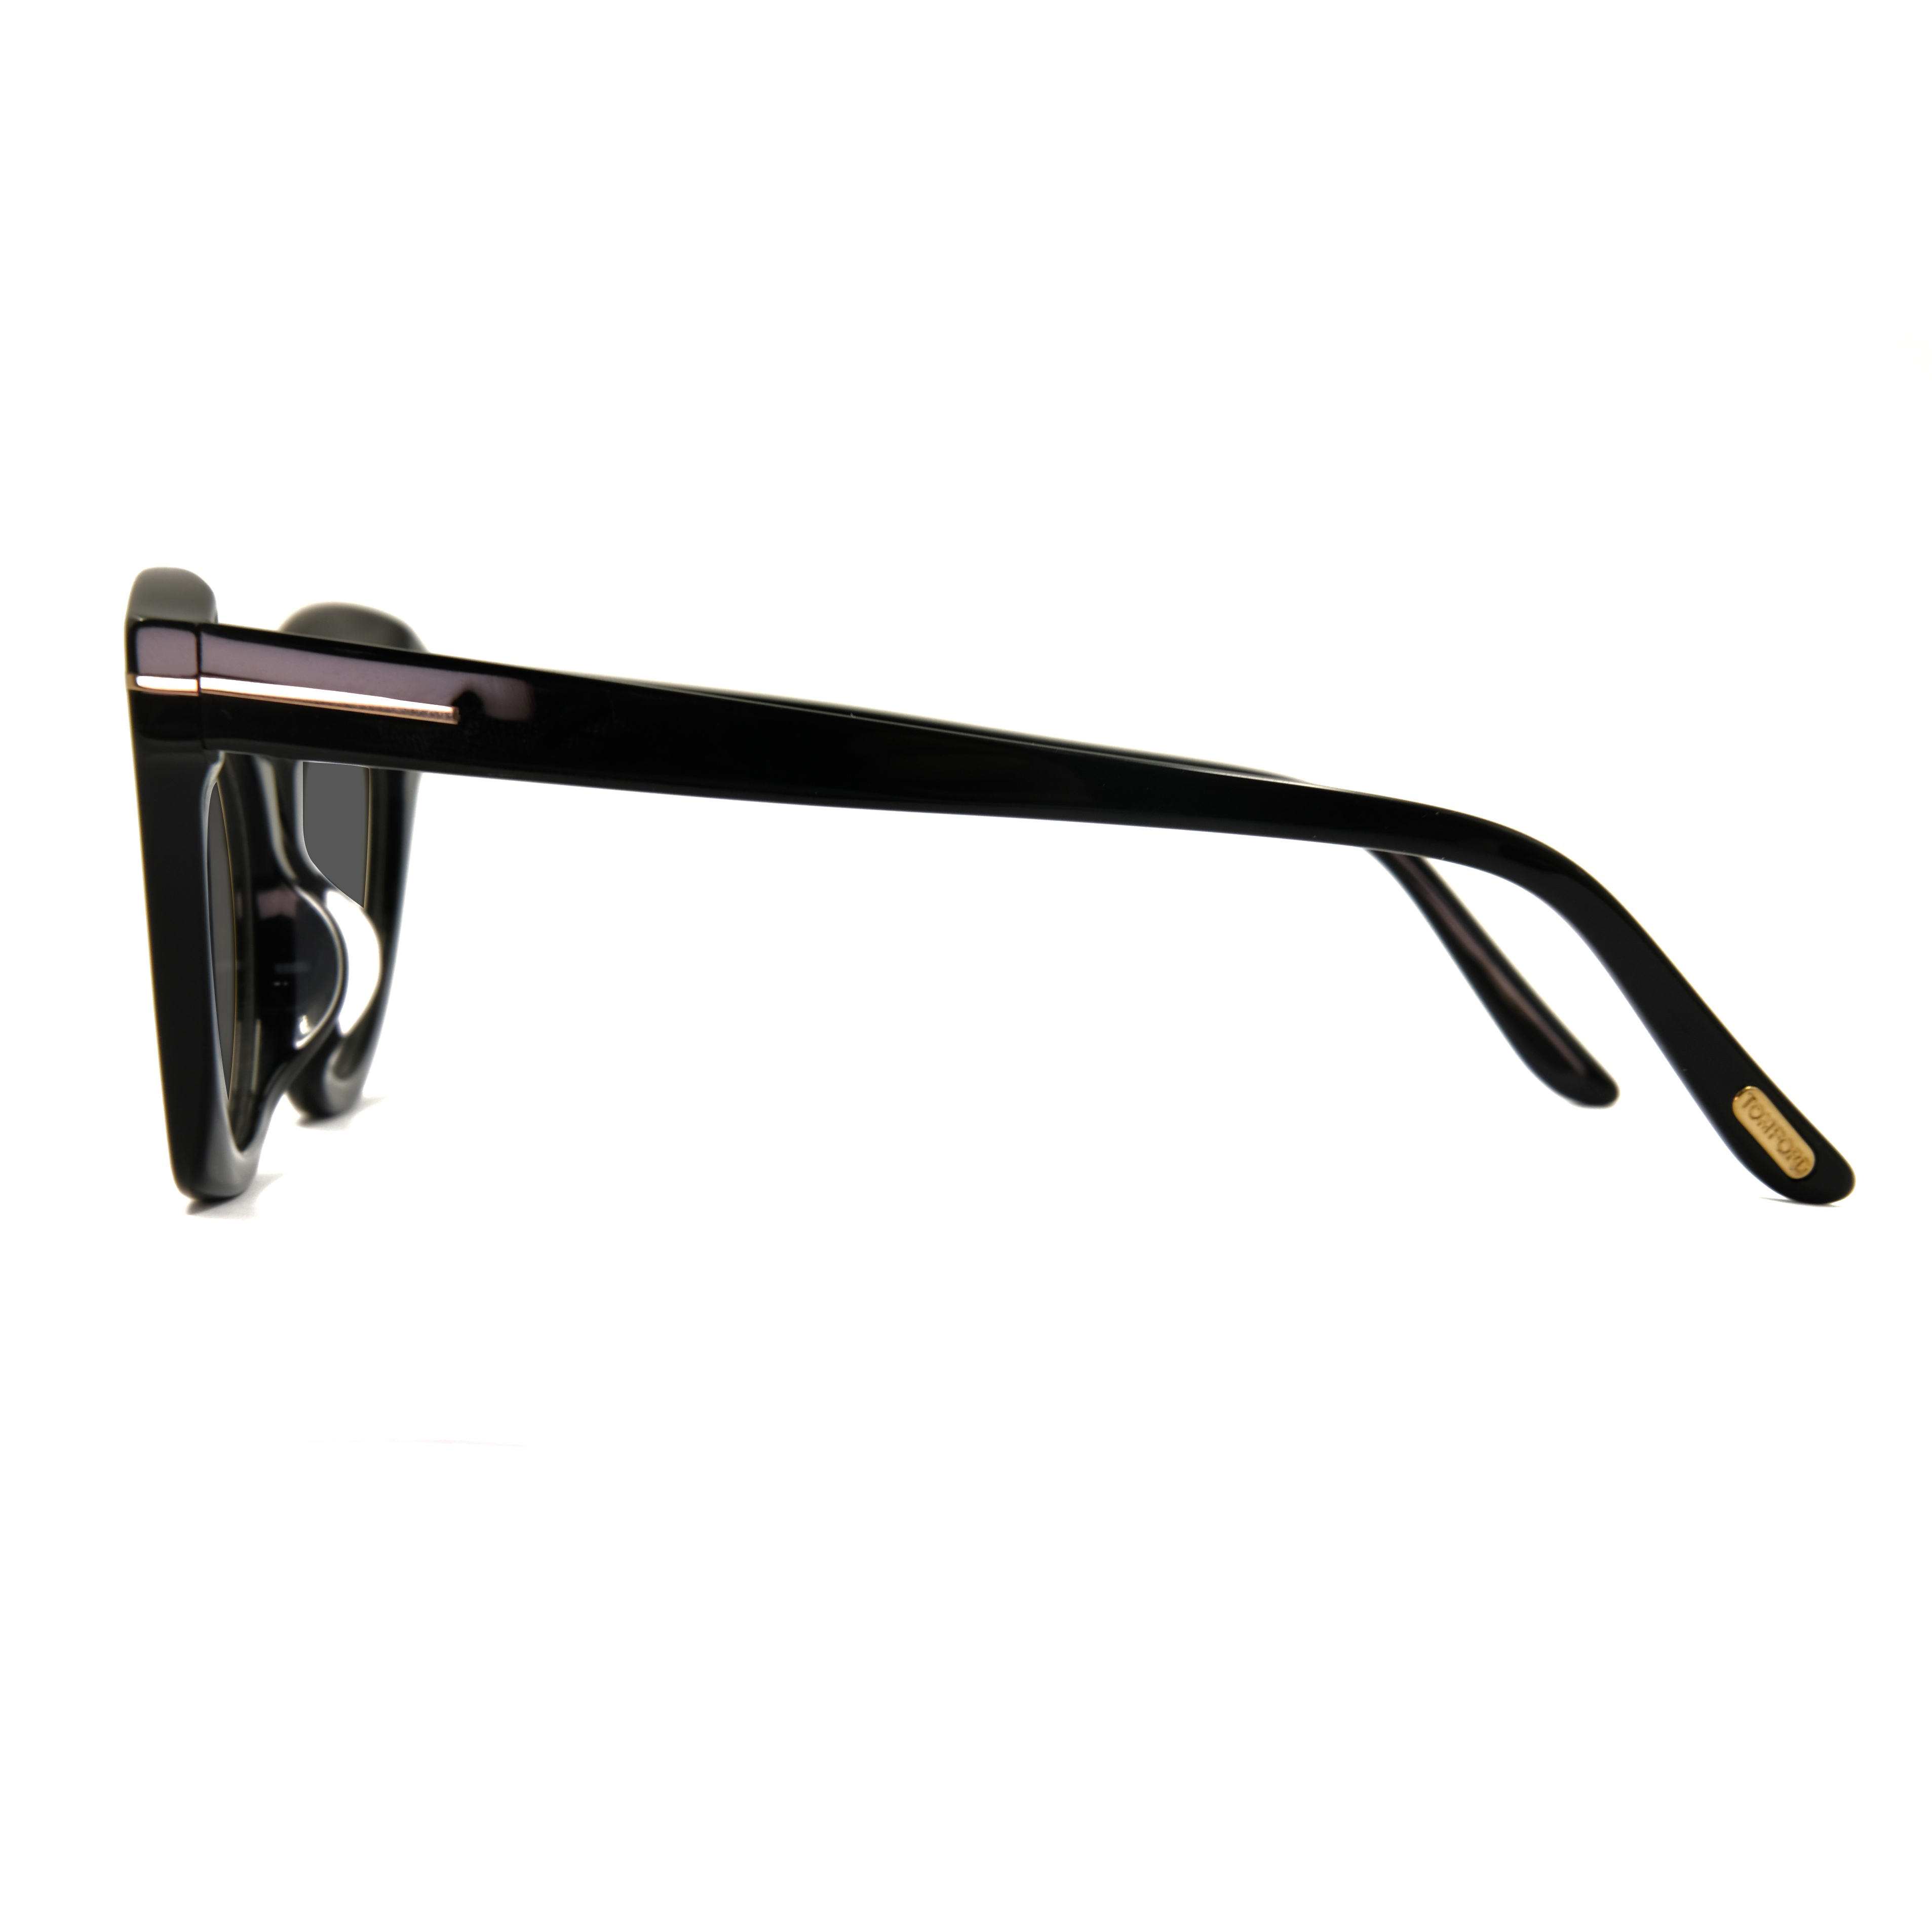 Fábrica de gafas de sol Gafas de sol de acetato negro Fabricantes de gafas de sol de ojo de gato